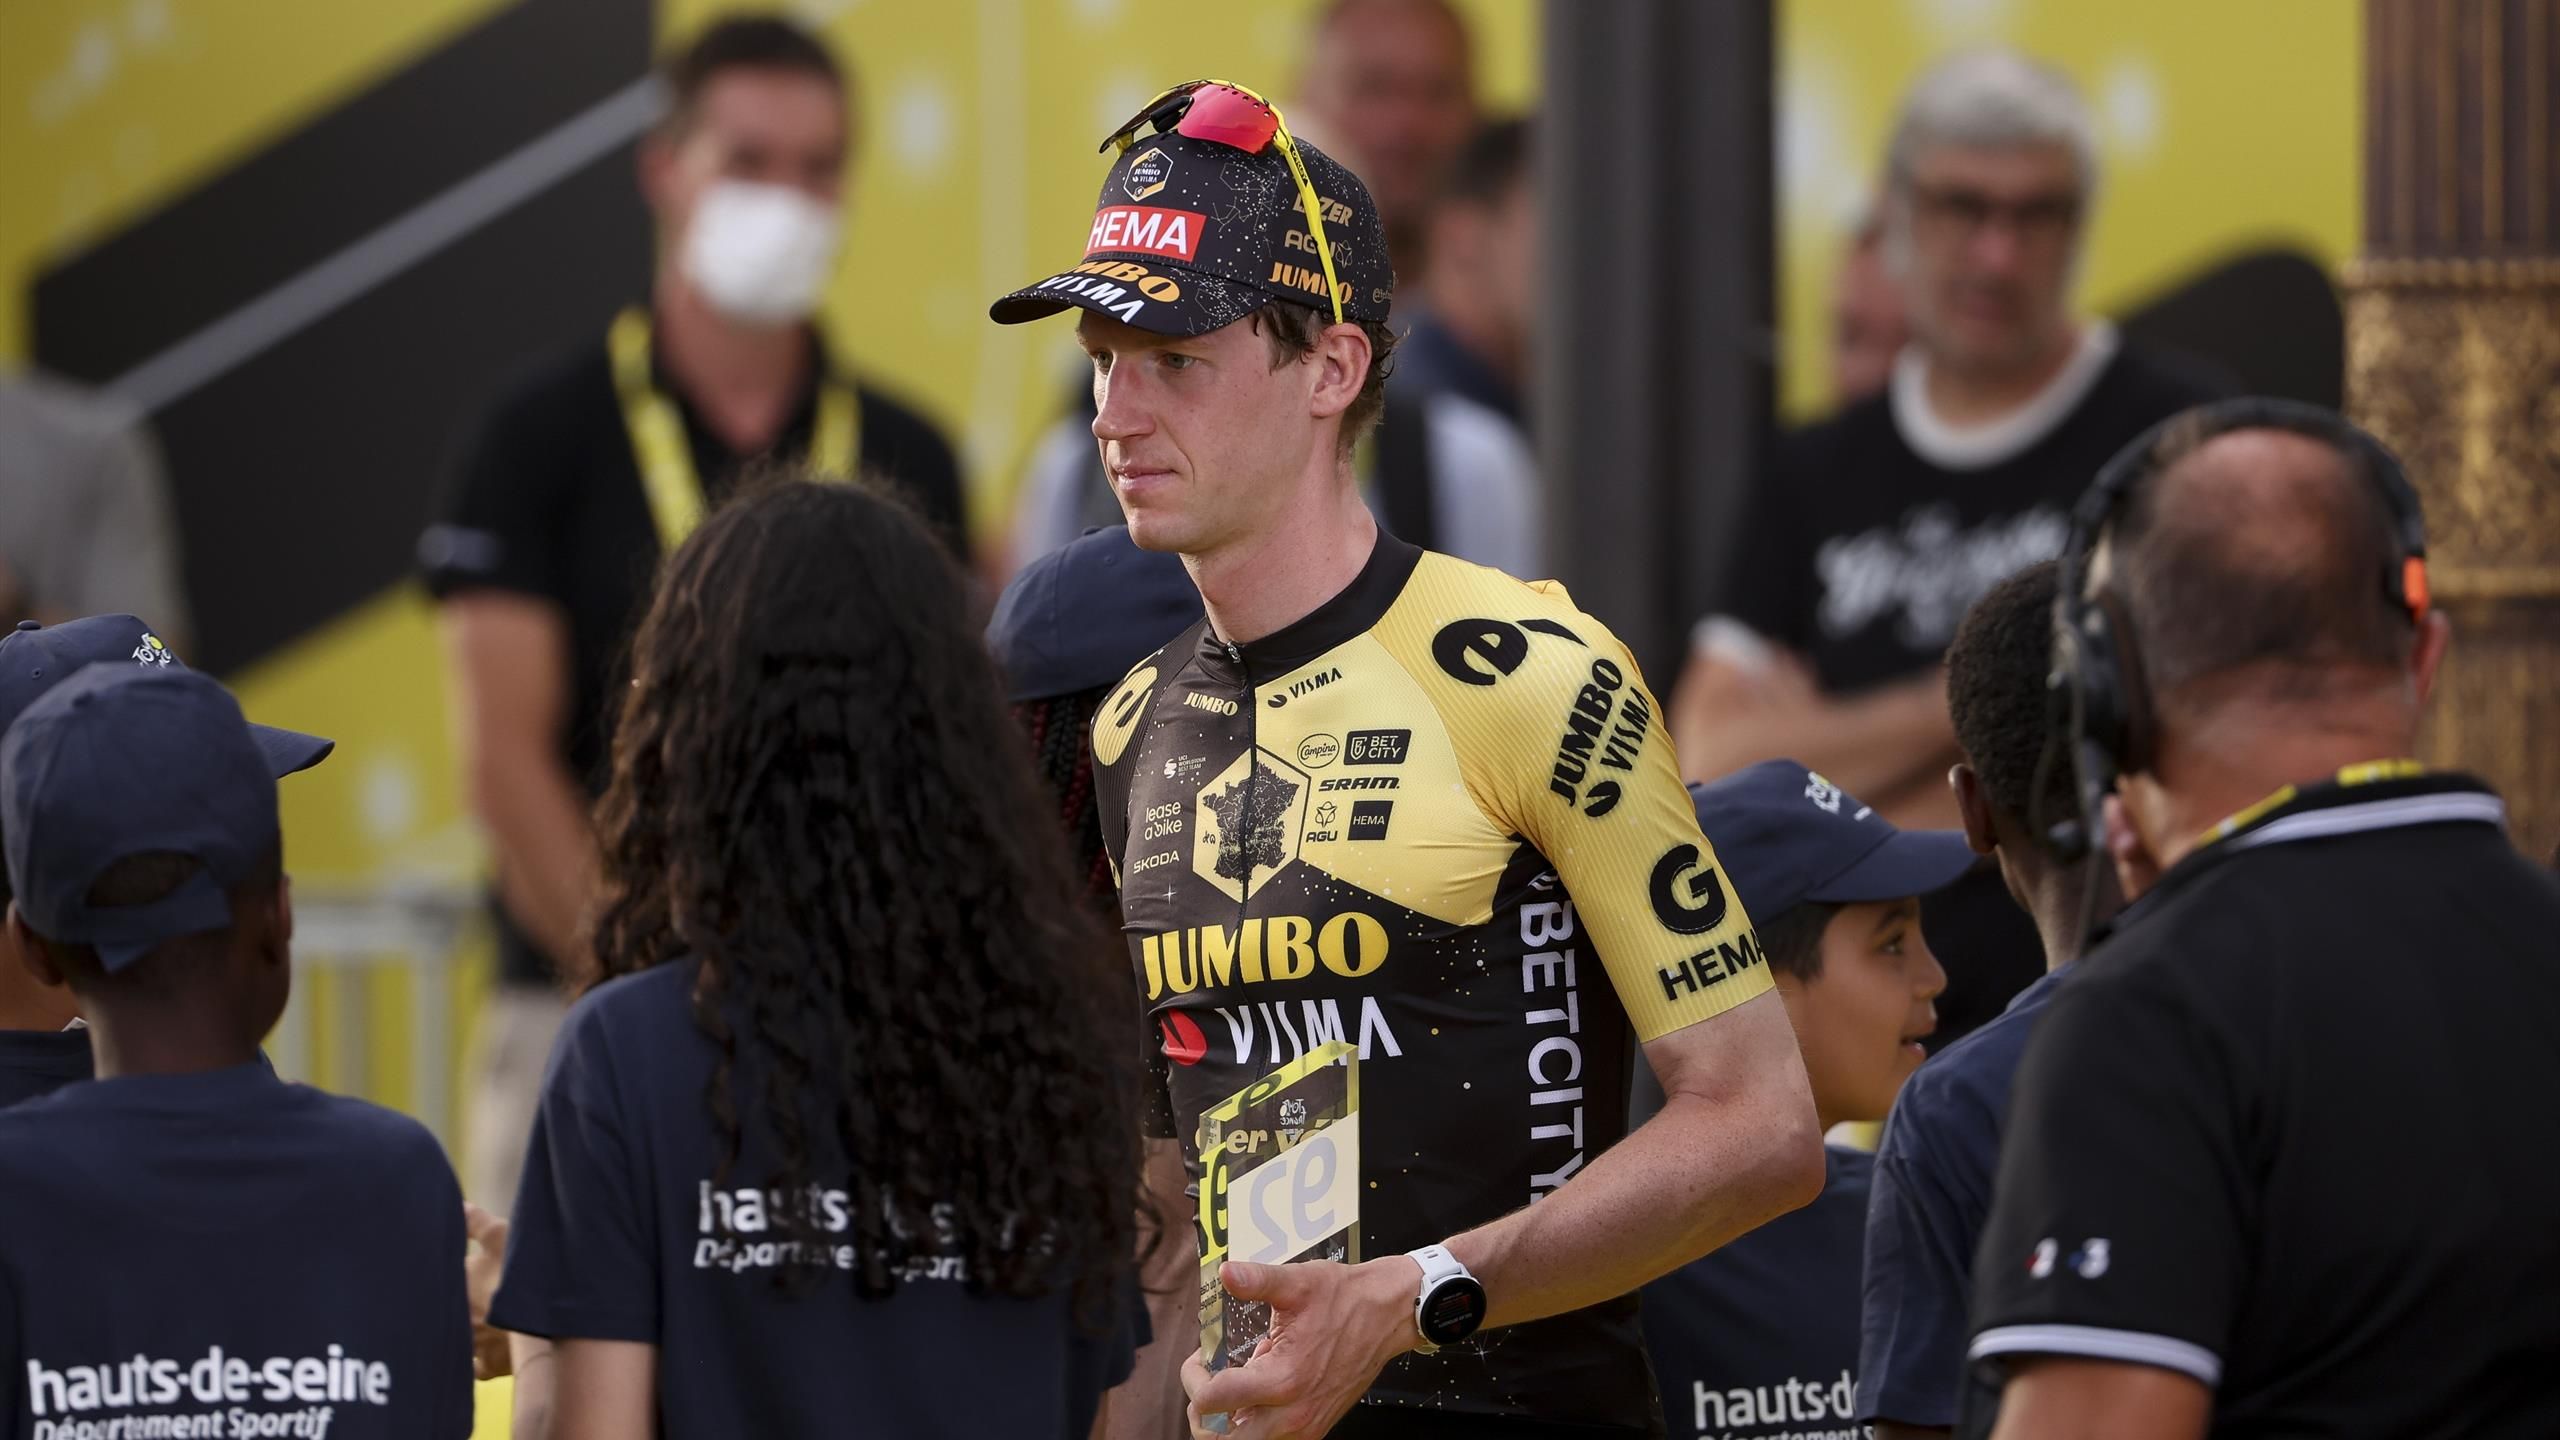 La Vuelta – Attila Valter da noticias sobre Nathan Van Hooydonck (Jumbo-Visma): “Está consciente y se encuentra bien”